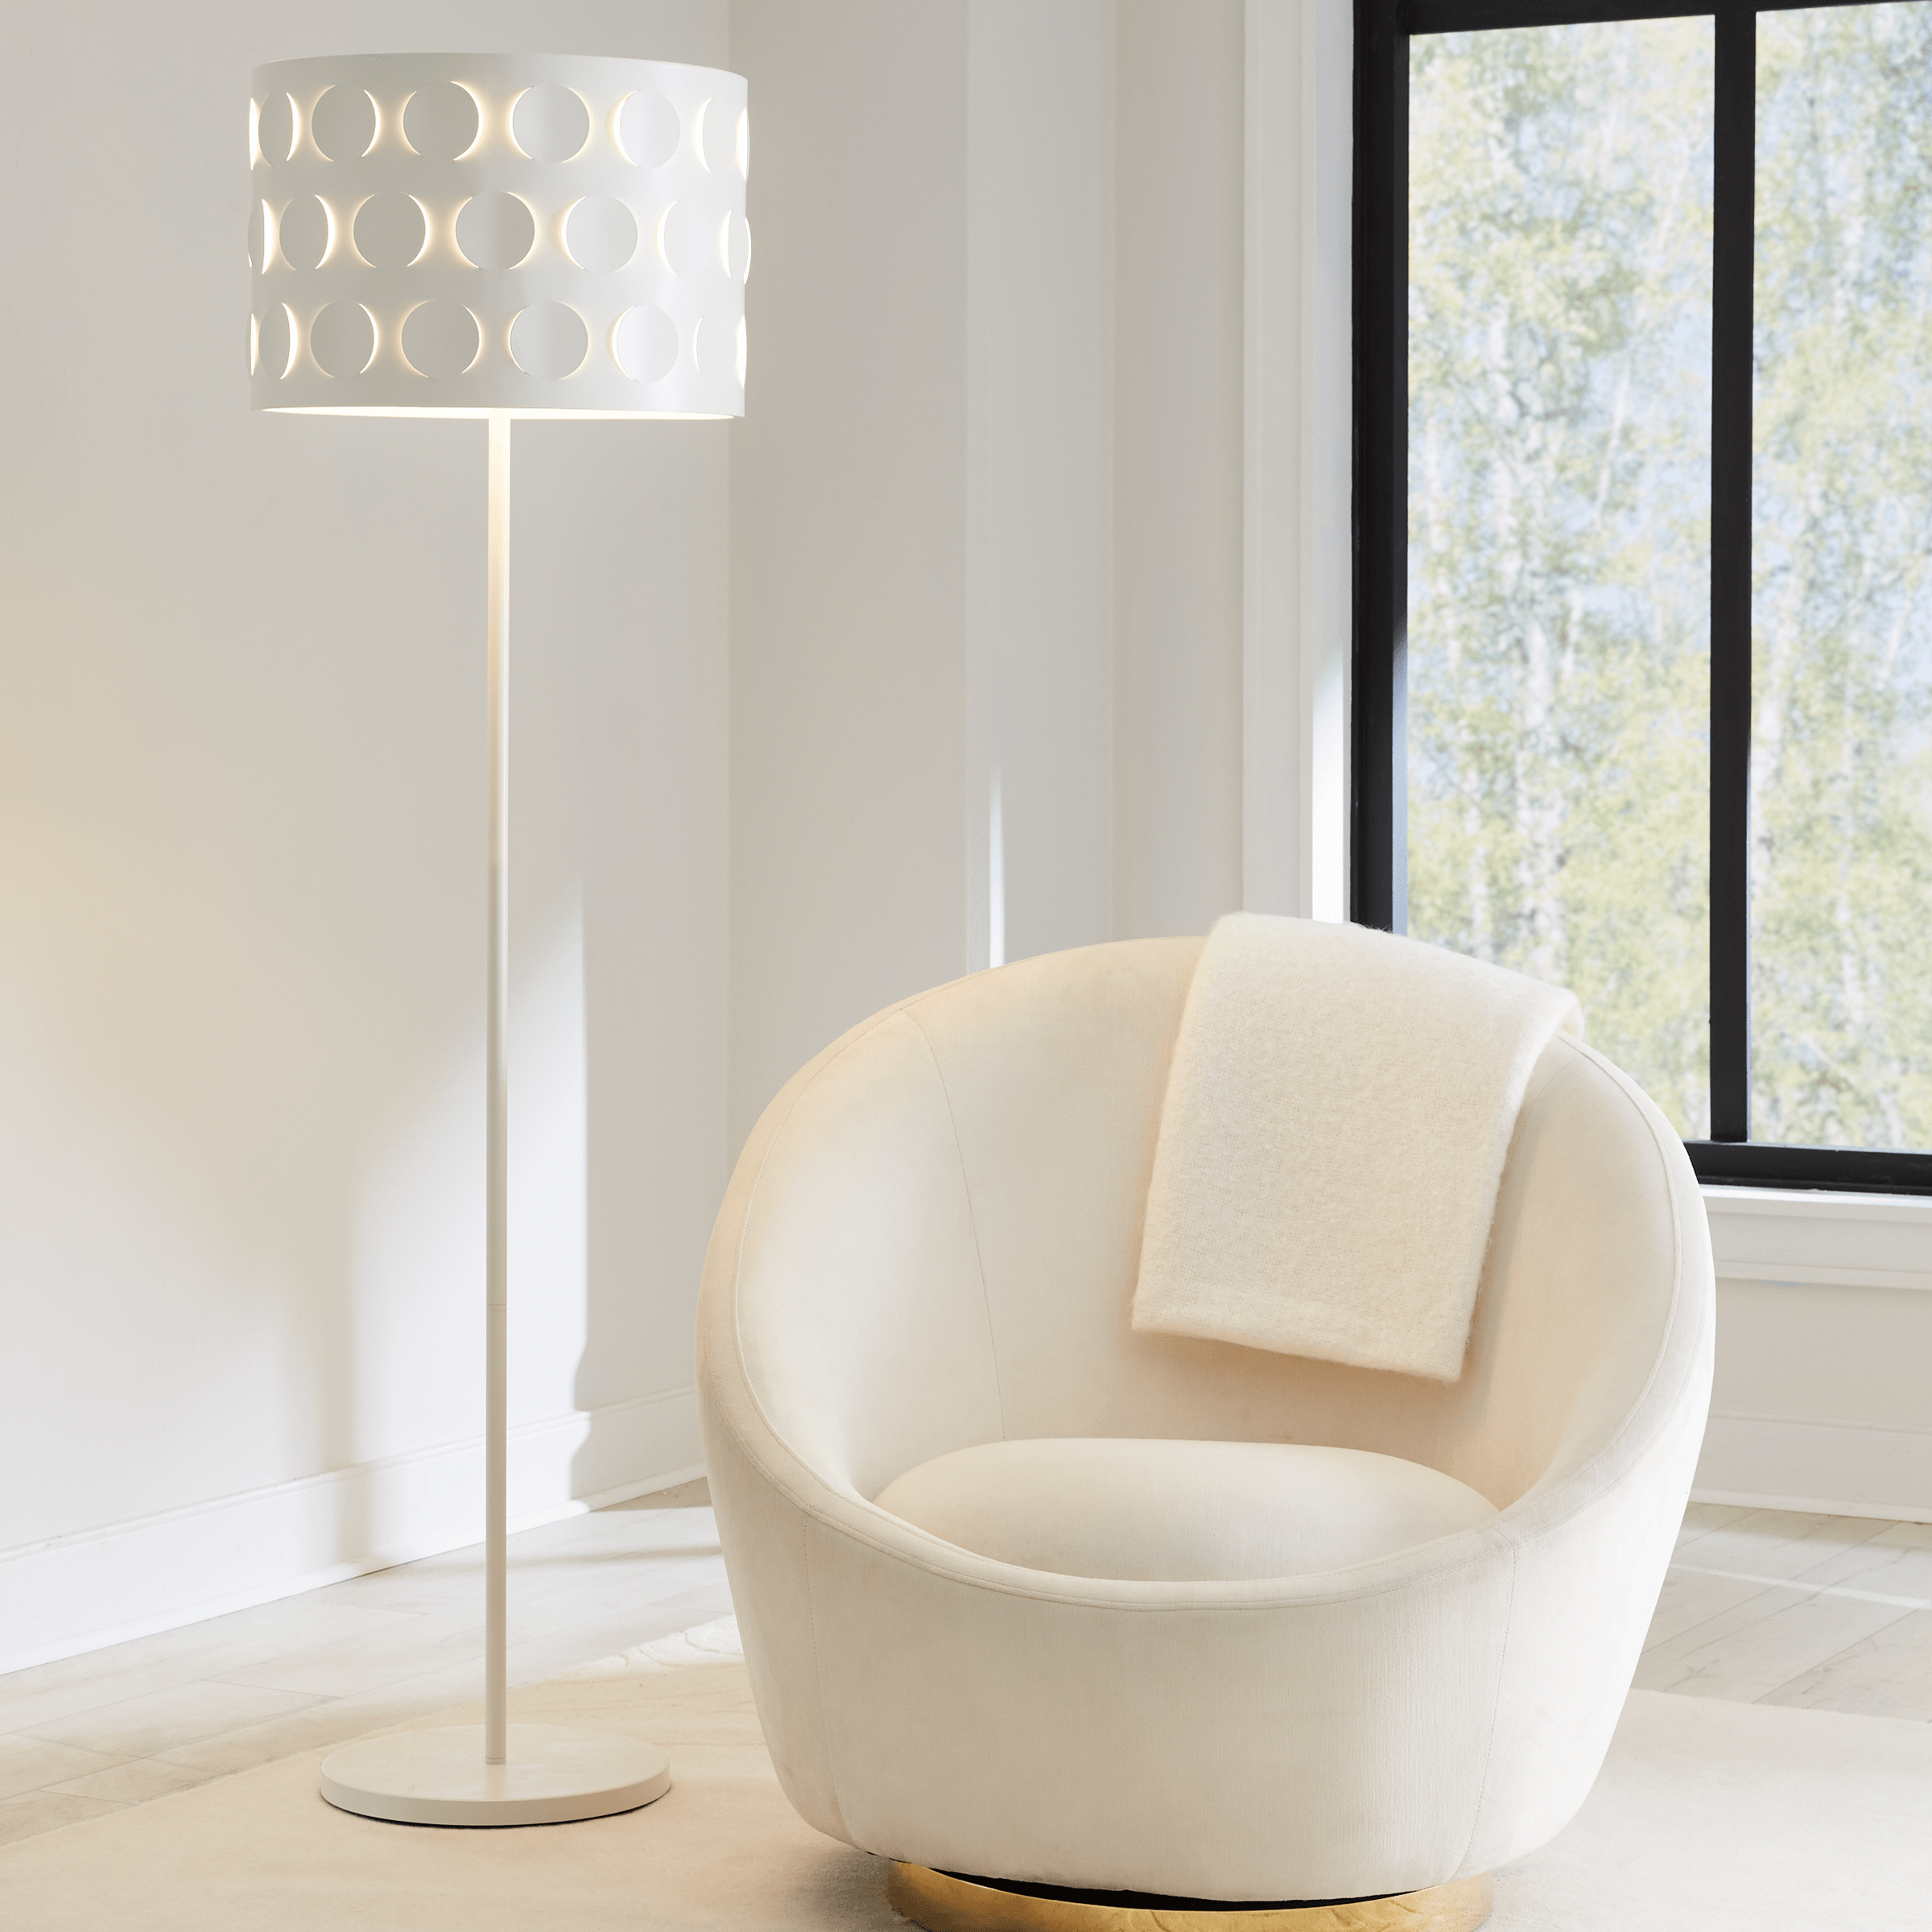 Visual Comfort Studio Collection - Dottie 1-Light Floor Lamp - Lights Canada